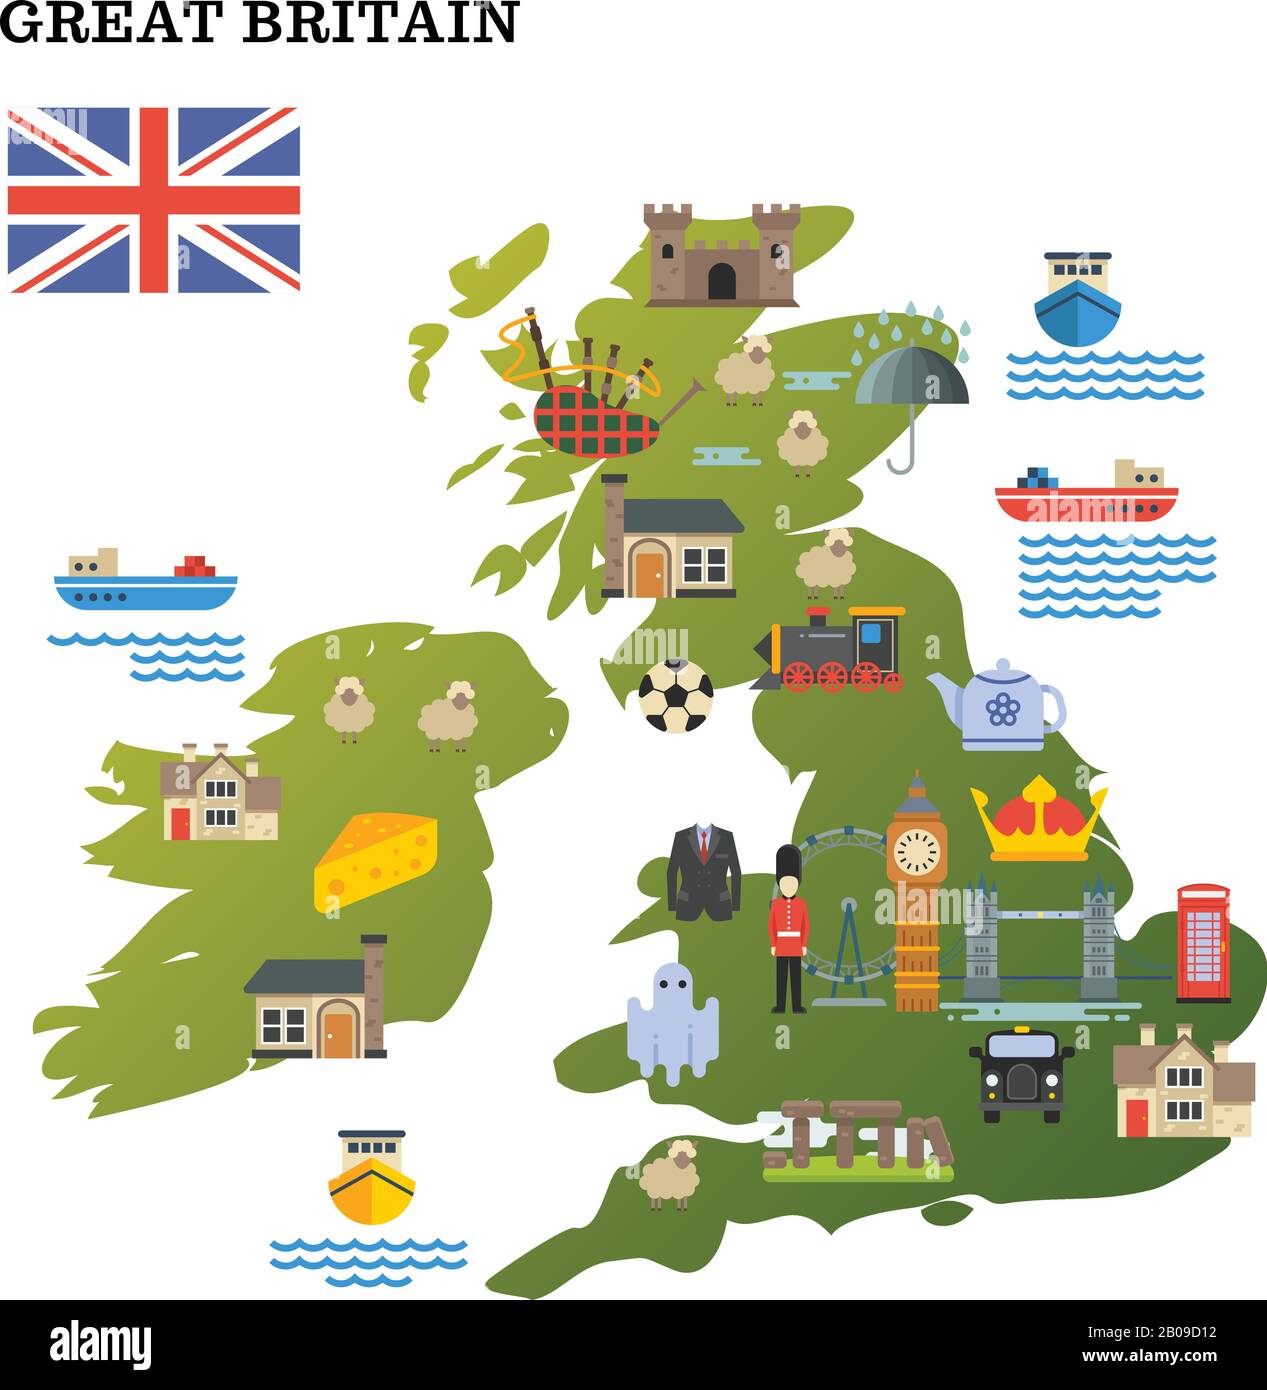 Mappa di viaggio del Regno Unito con icone di riferimento illustrazione vettoriale. Mappa del Regno Unito con luoghi di interesse famouse Illustrazione Vettoriale